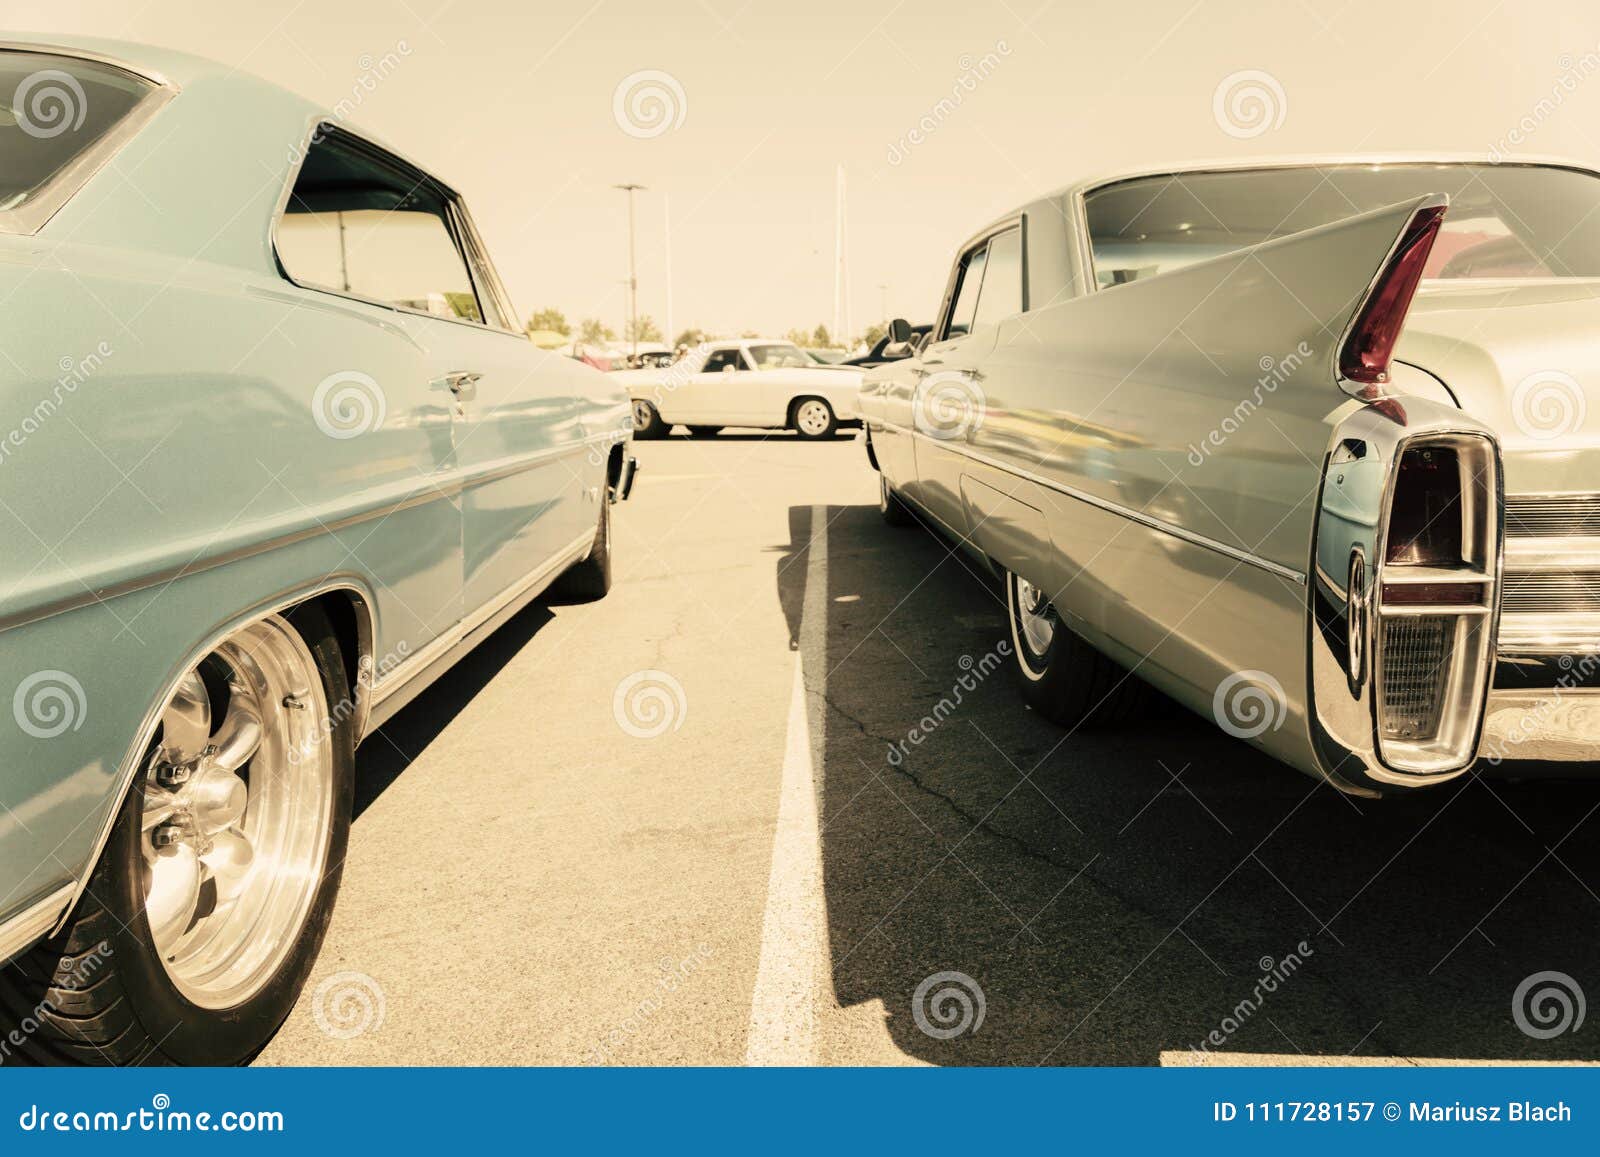 HD vintage car wallpapers | Peakpx